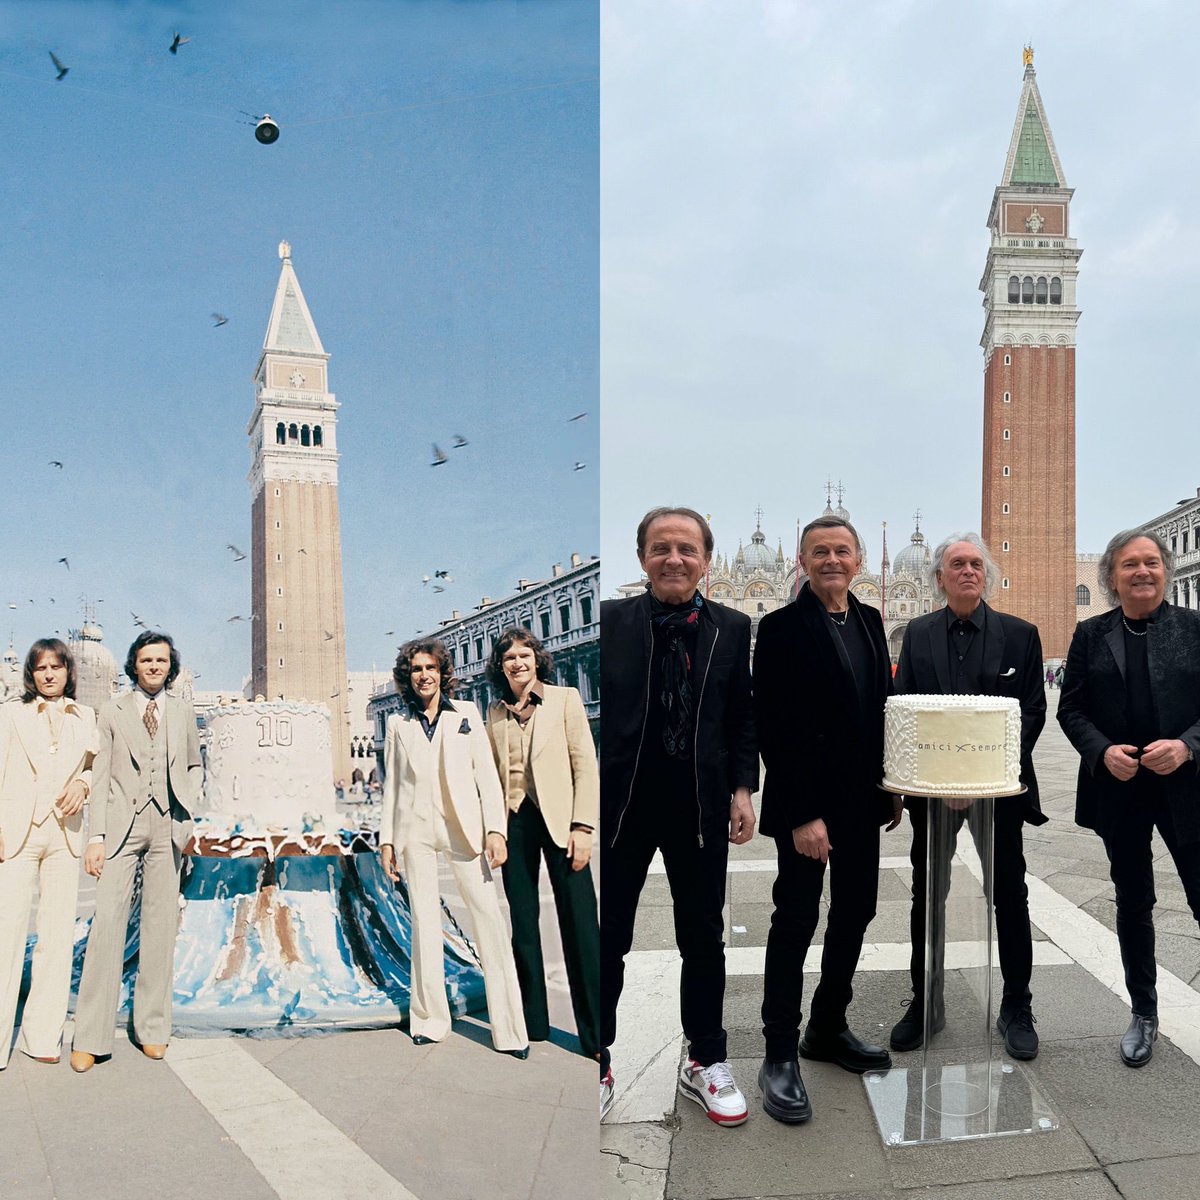 48 anni fa festeggiavamo i DIECI ANNI di vita facendo una foto STUPENDA che è rimasta nella nostra STORIA in PIAZZA SAN MARCO. Domani ALLE 11:00 apriranno le vendite per la DATA ZERO che faremo all’ARENA DEL MARE 42°15° di #TERMOLI. #Pooh #amiciXsempre #Venezia